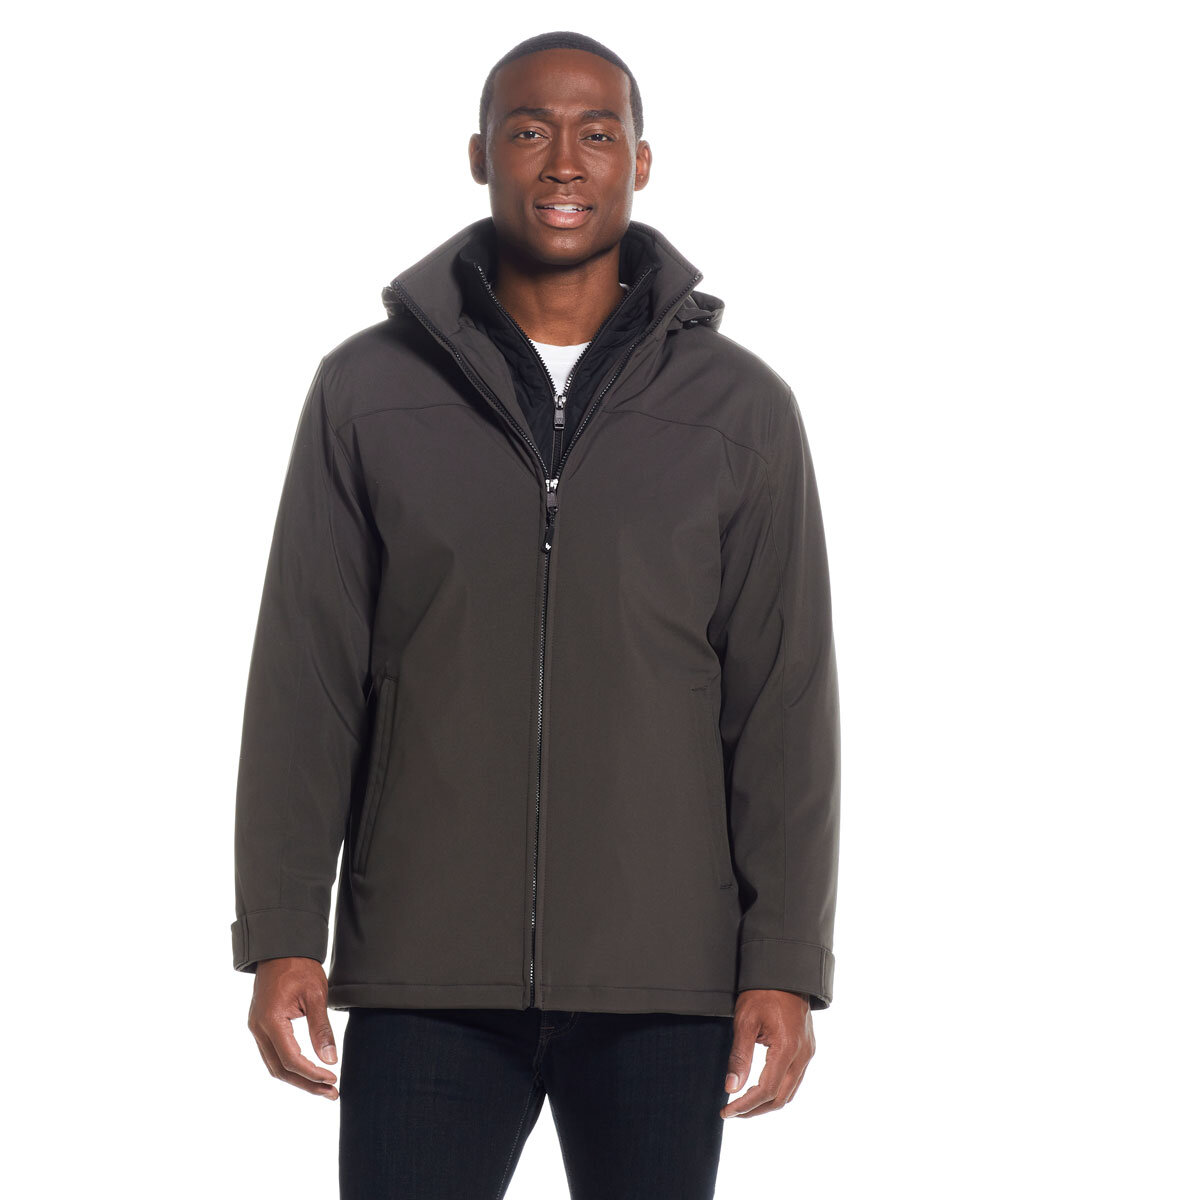 Weatherproof Men's Ultra Tech Flextech Jacket in Brown